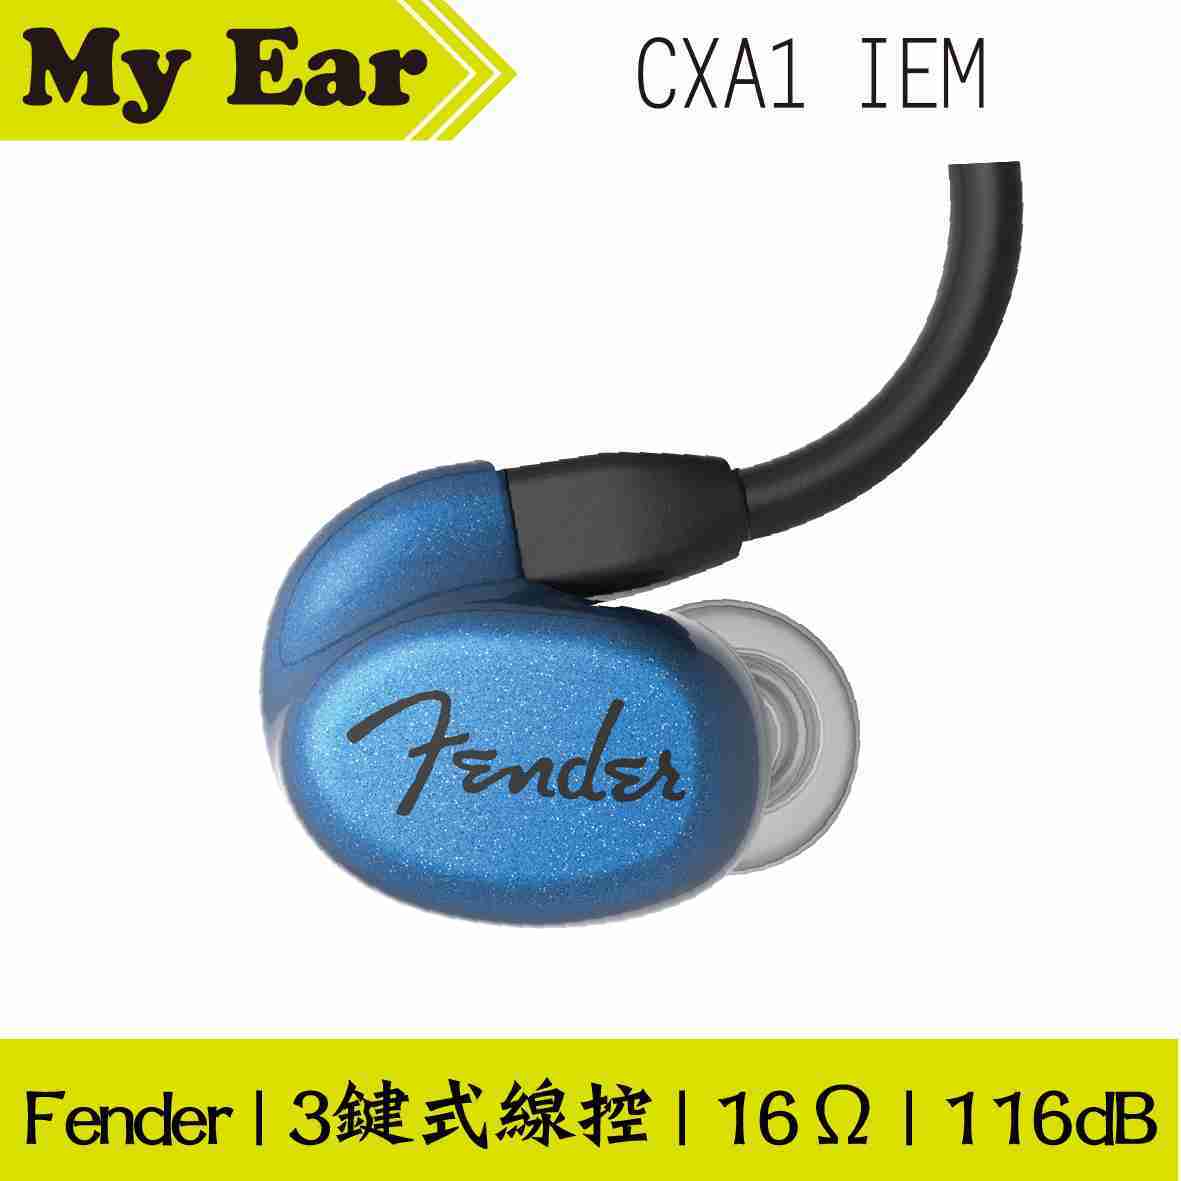 Fender CXA1 IEM 多色 可通話 線控式 耳道式耳機 | My Ear 耳機專門店